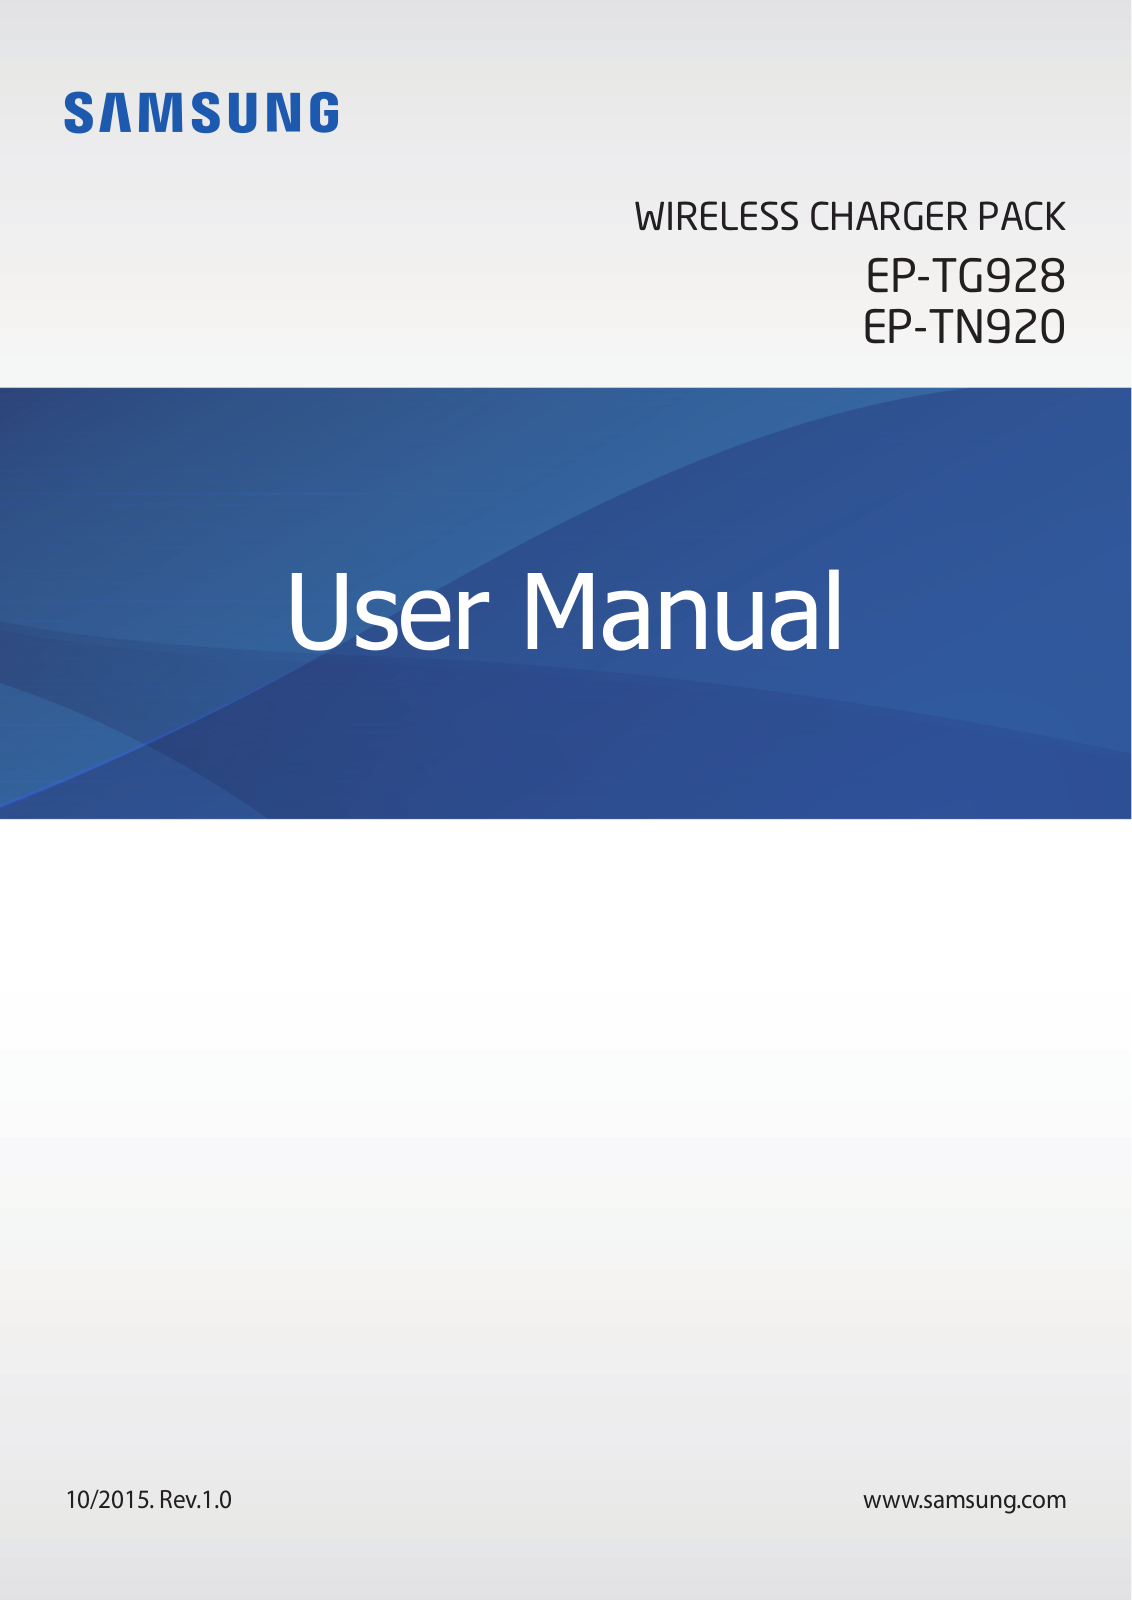 Samsung EP-TN920BSUGUS, EP-TN920BFUGUS, EP-TG928BSUGUS, EP-TG928BFUGUS User Manual